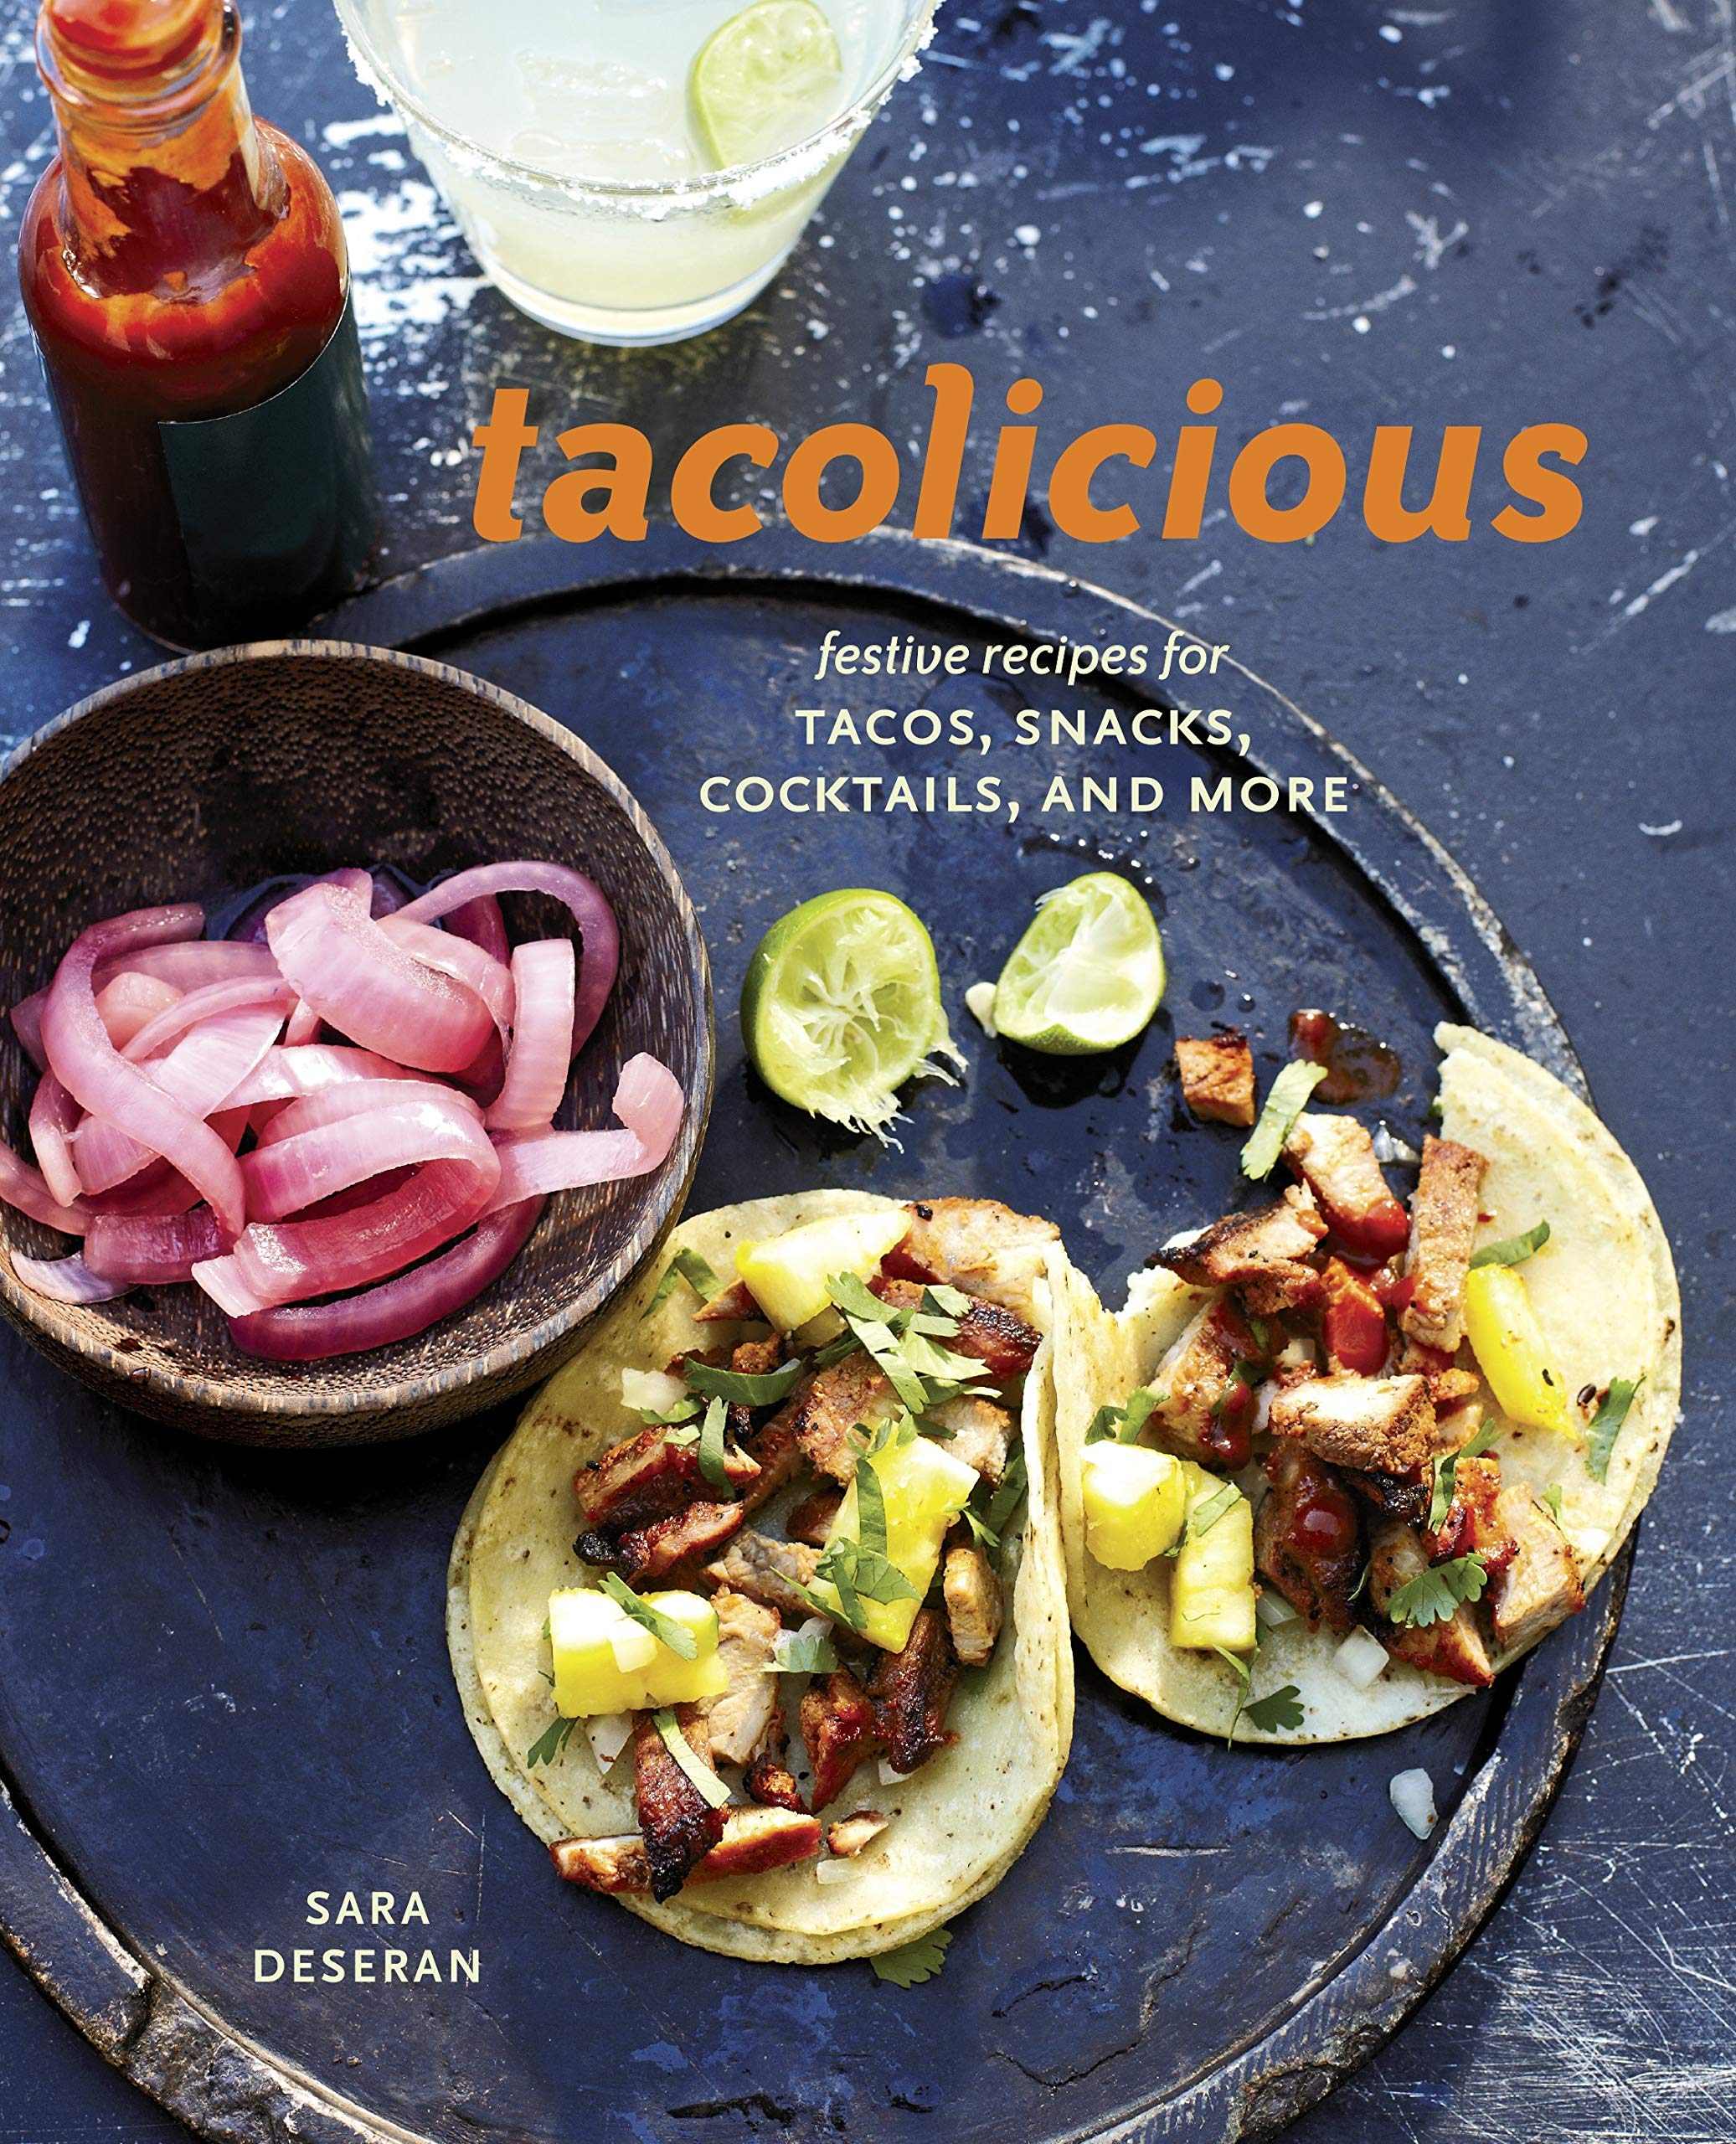 Tacolicious: Festive Recipes for Tacos, Snacks, Cocktails, and More (Sara Deseran)